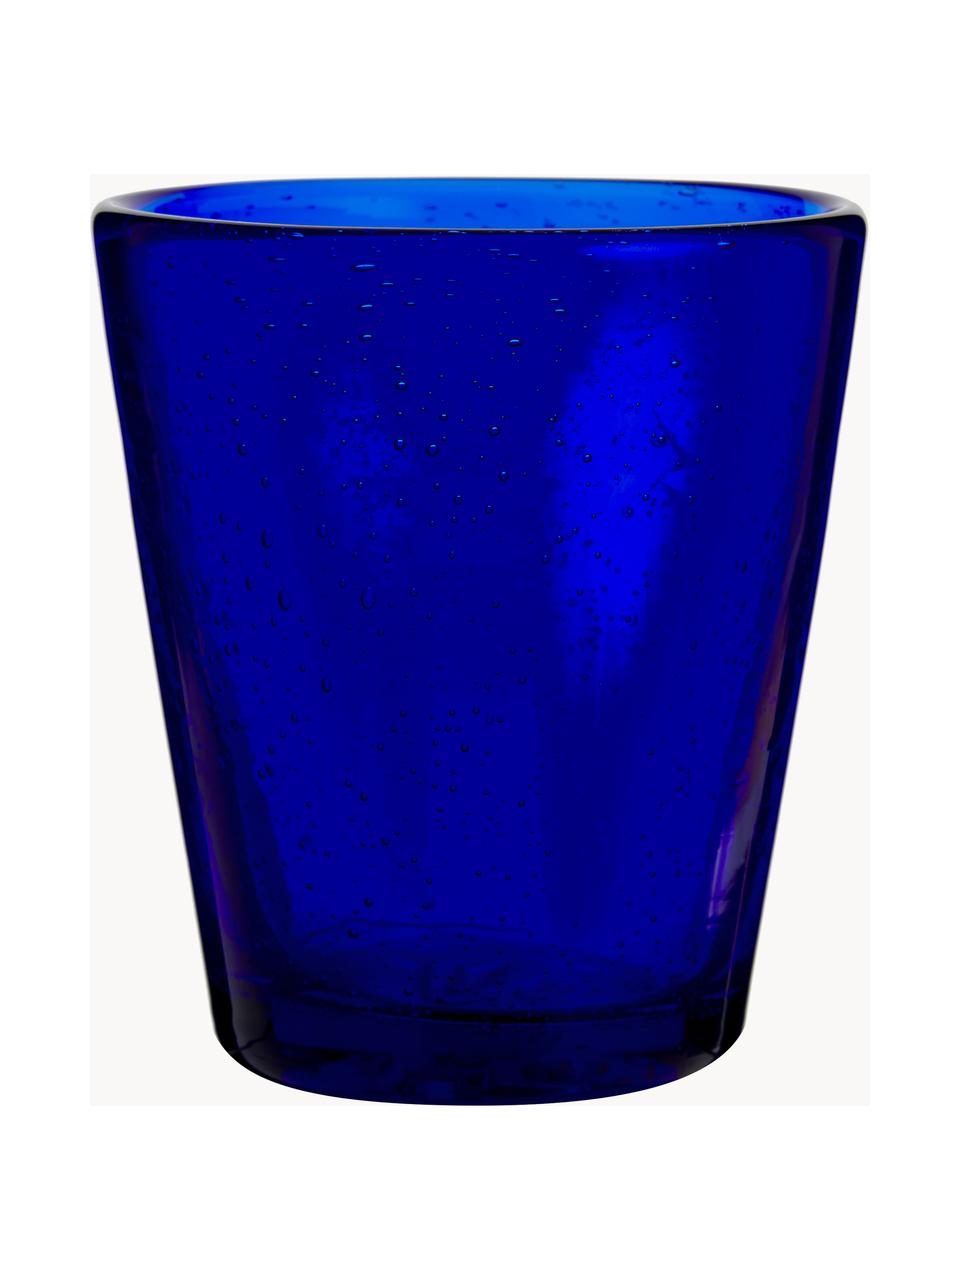 Wassergläser Cancun mit Lufteinschlüssen, 6er-Set, Glas, Blau-, Türkis- und Grautöne, transparent, Ø 9 x H 10 cm, 330 ml